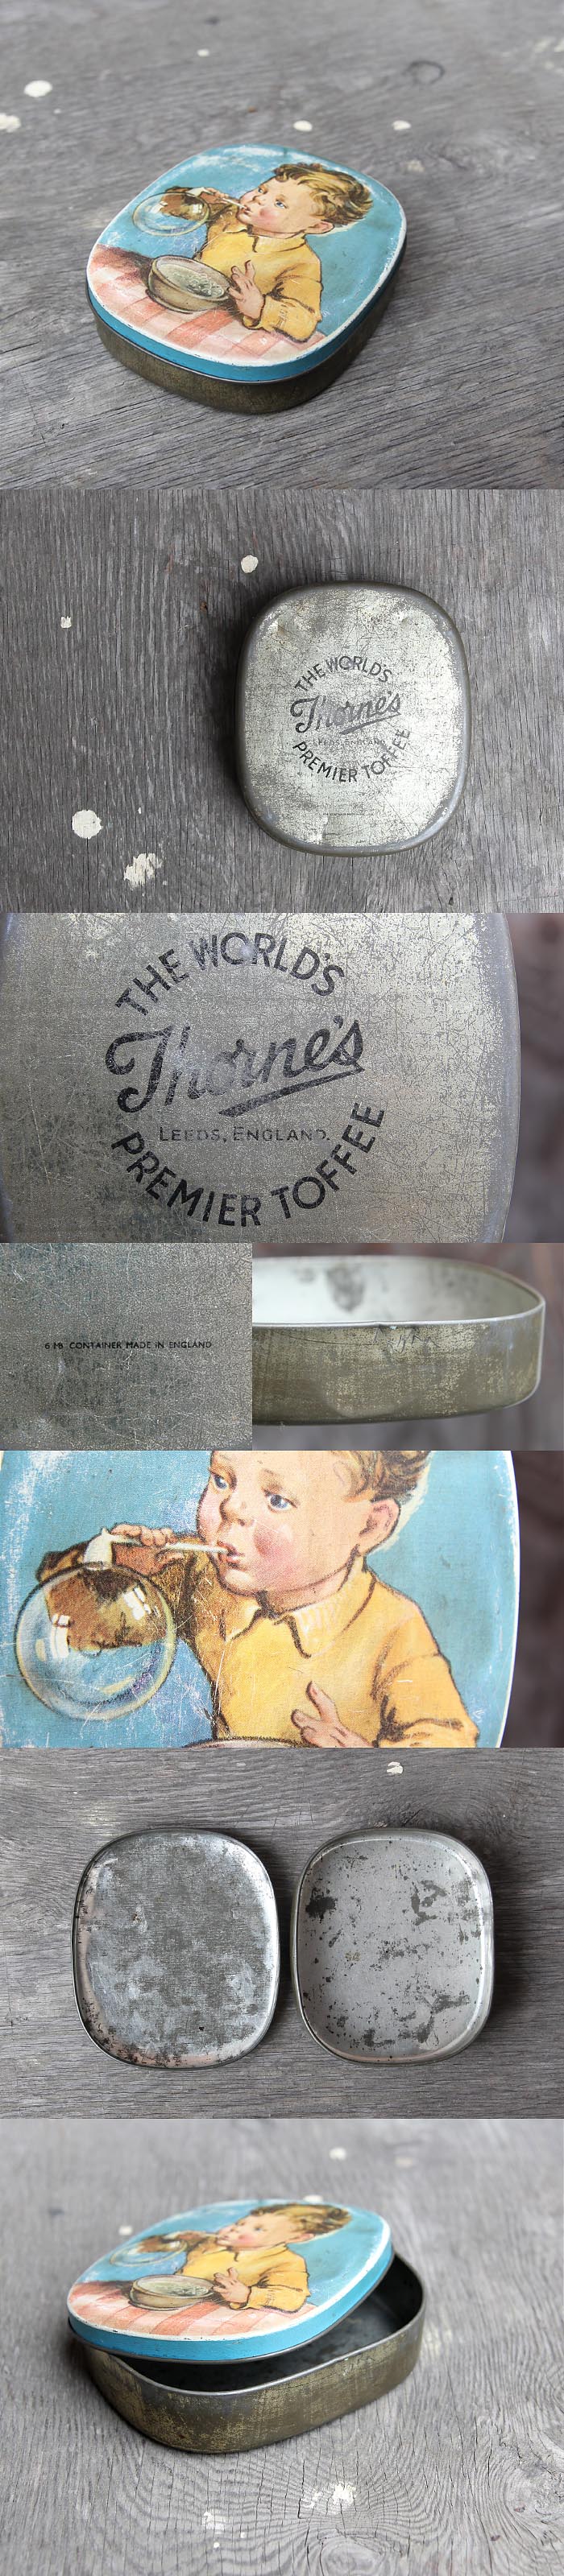 イギリス アンティーク トフィー缶 お菓子 ブリキ缶 雑貨「THORNES The Worlds Premier Toffee」P-140